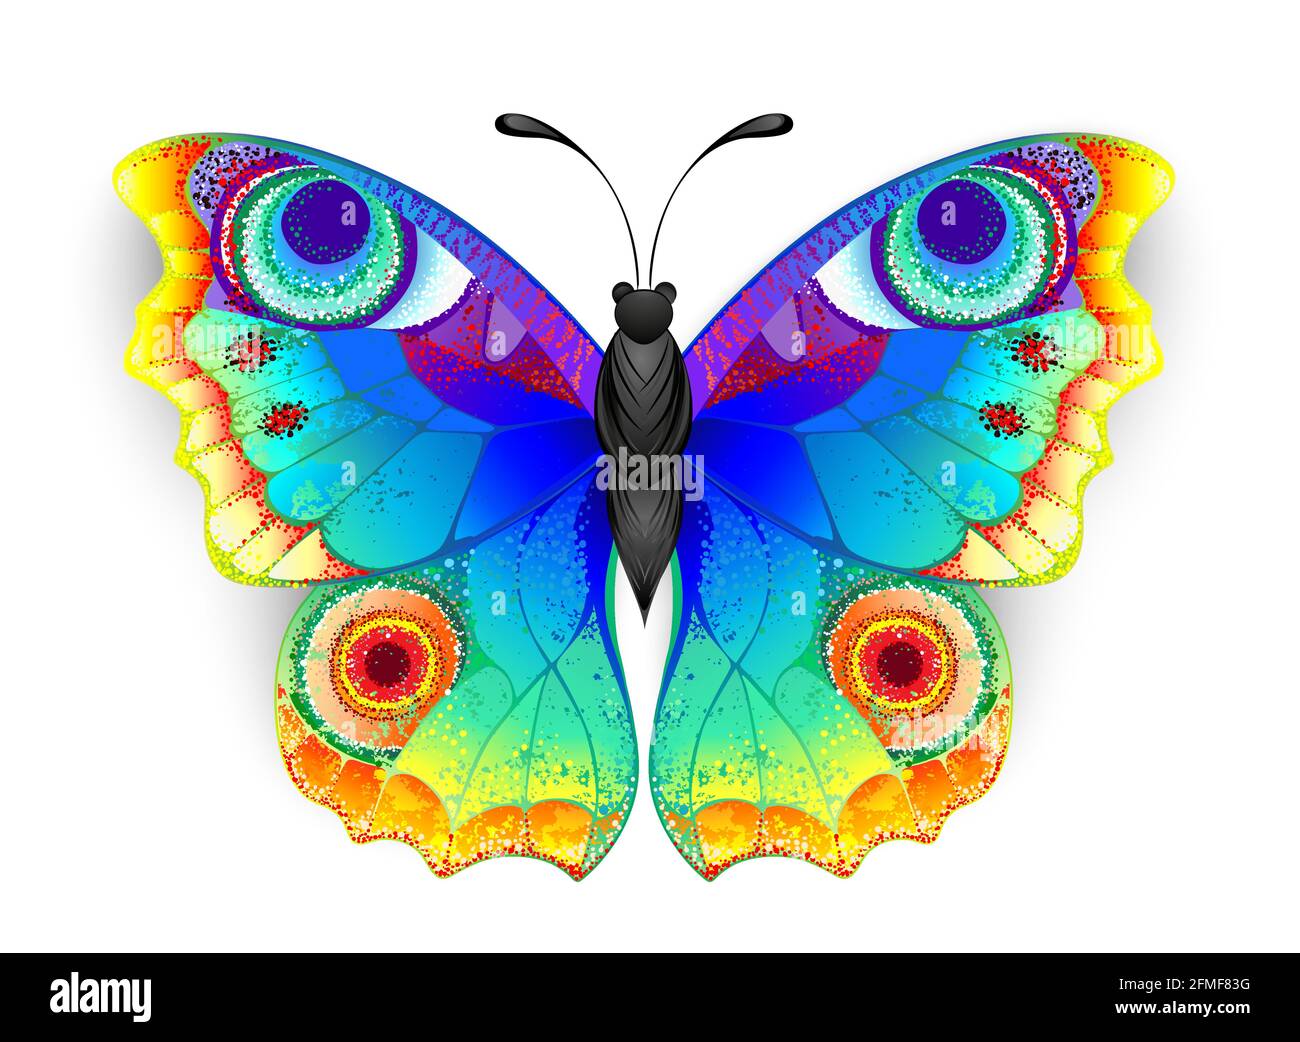 Regenbogen, realistisch, künstlerisch gezeichnet, helle Farben Pfau Schmetterling mit strukturierten detaillierten Flügeln auf weißem Hintergrund. Regenbogenschmetterling. Stock Vektor